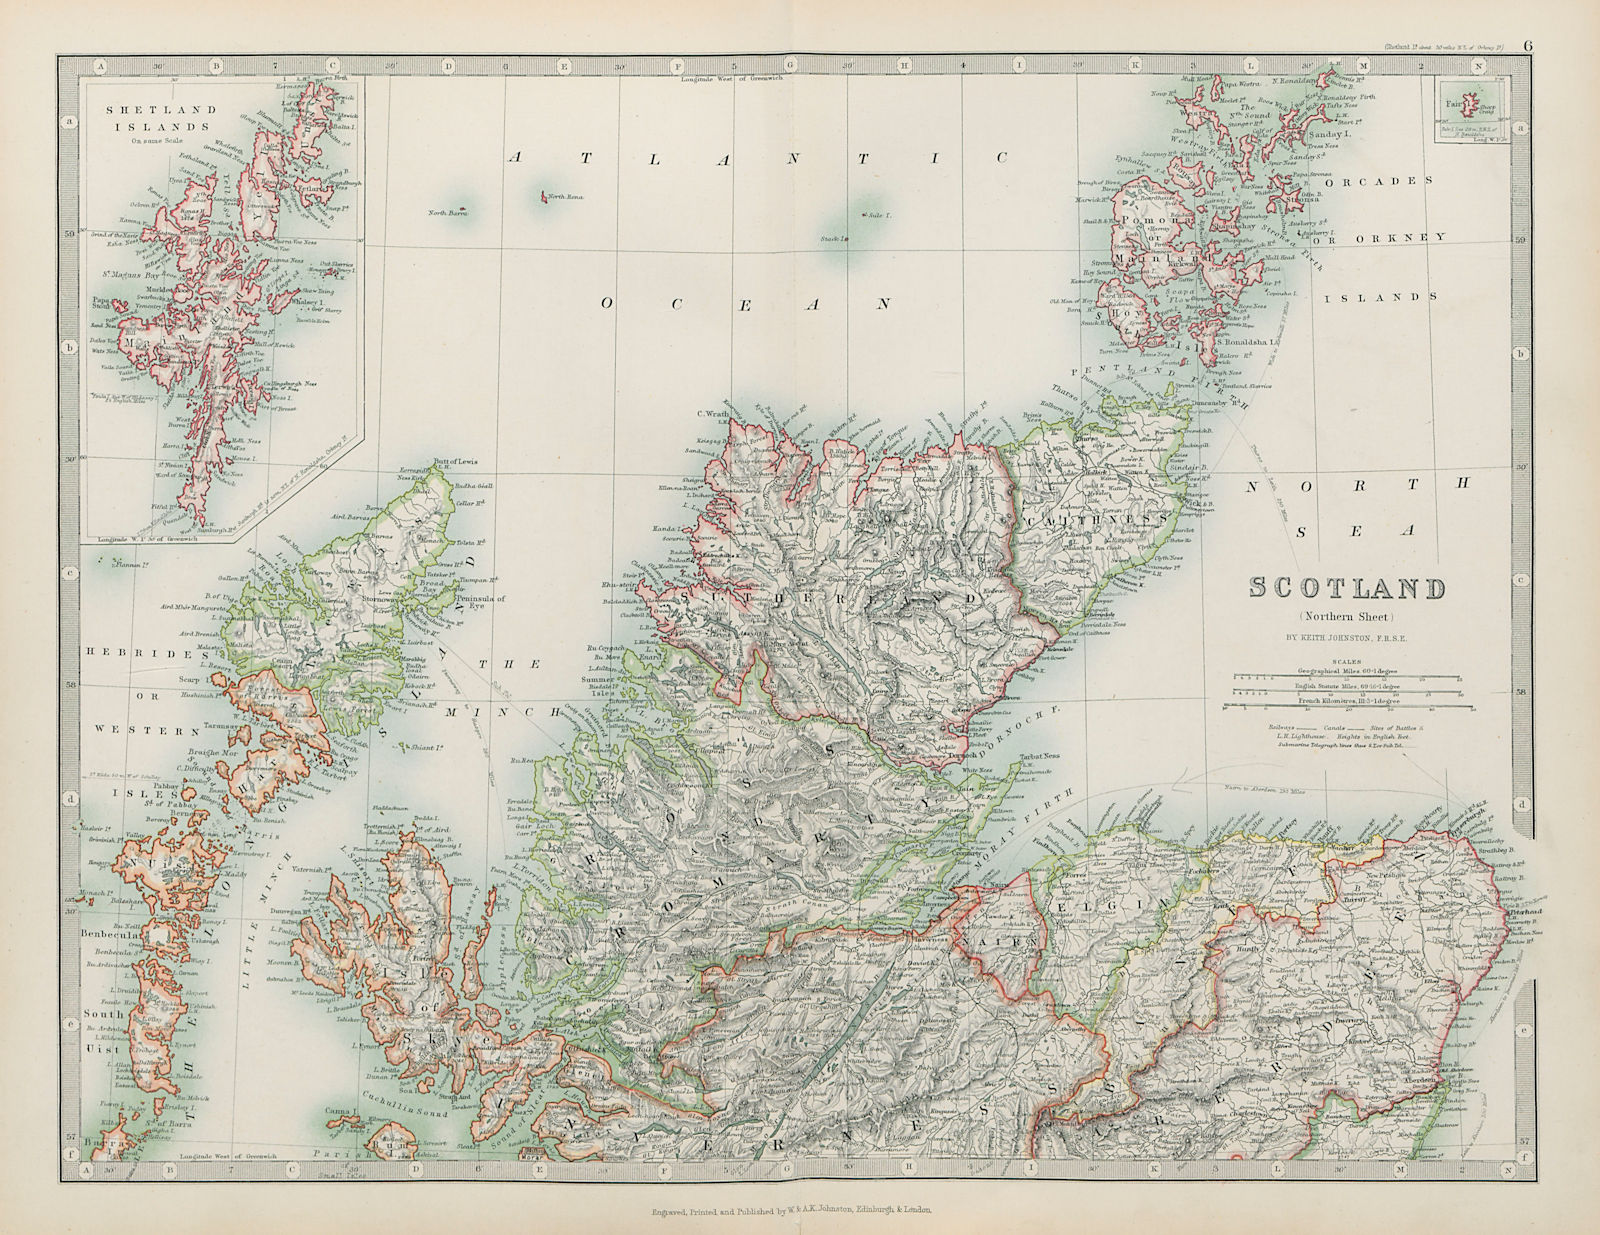 SCOTLAND NORTH Hebrides Highlands Shetlands western Isles JOHNSTON 1901 map